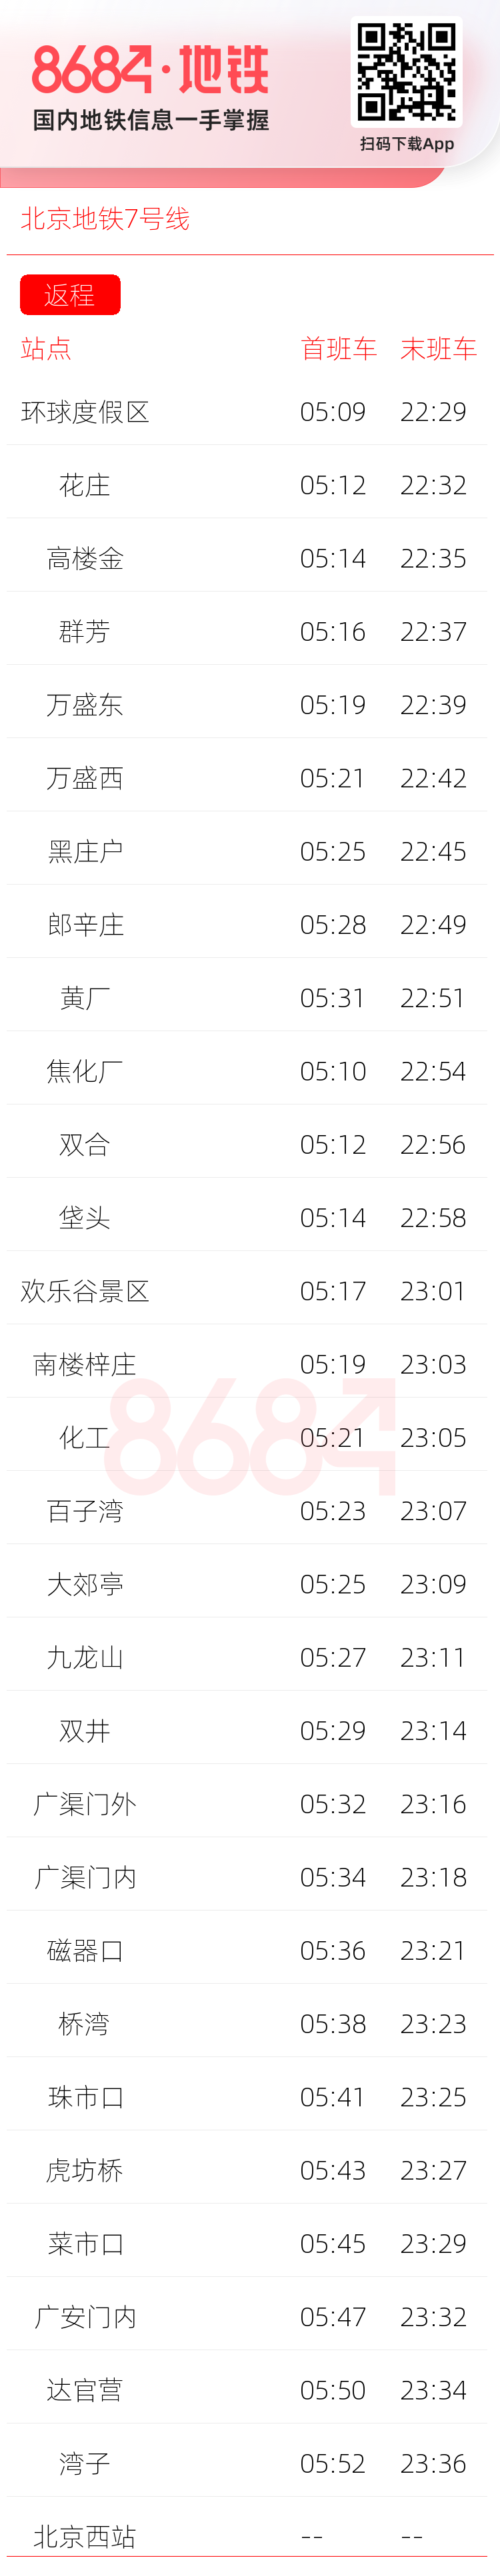 北京地铁7号线运营时间表